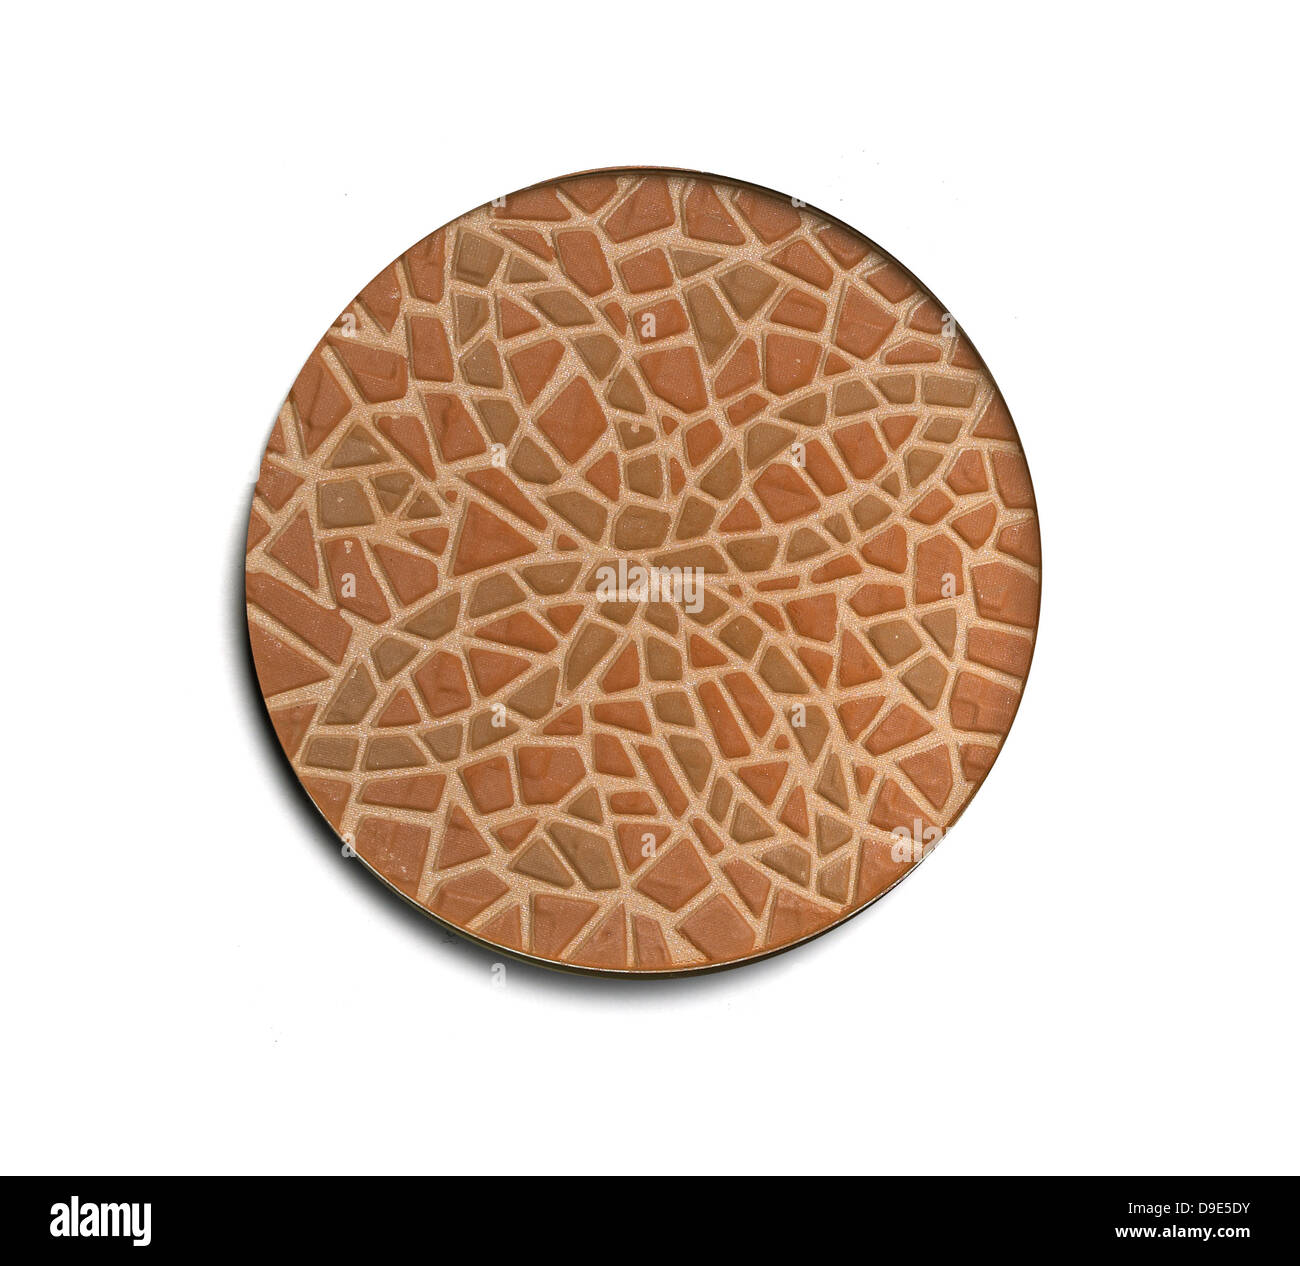 Sgranate bronzer polvere taglio compatto su uno sfondo bianco Foto Stock